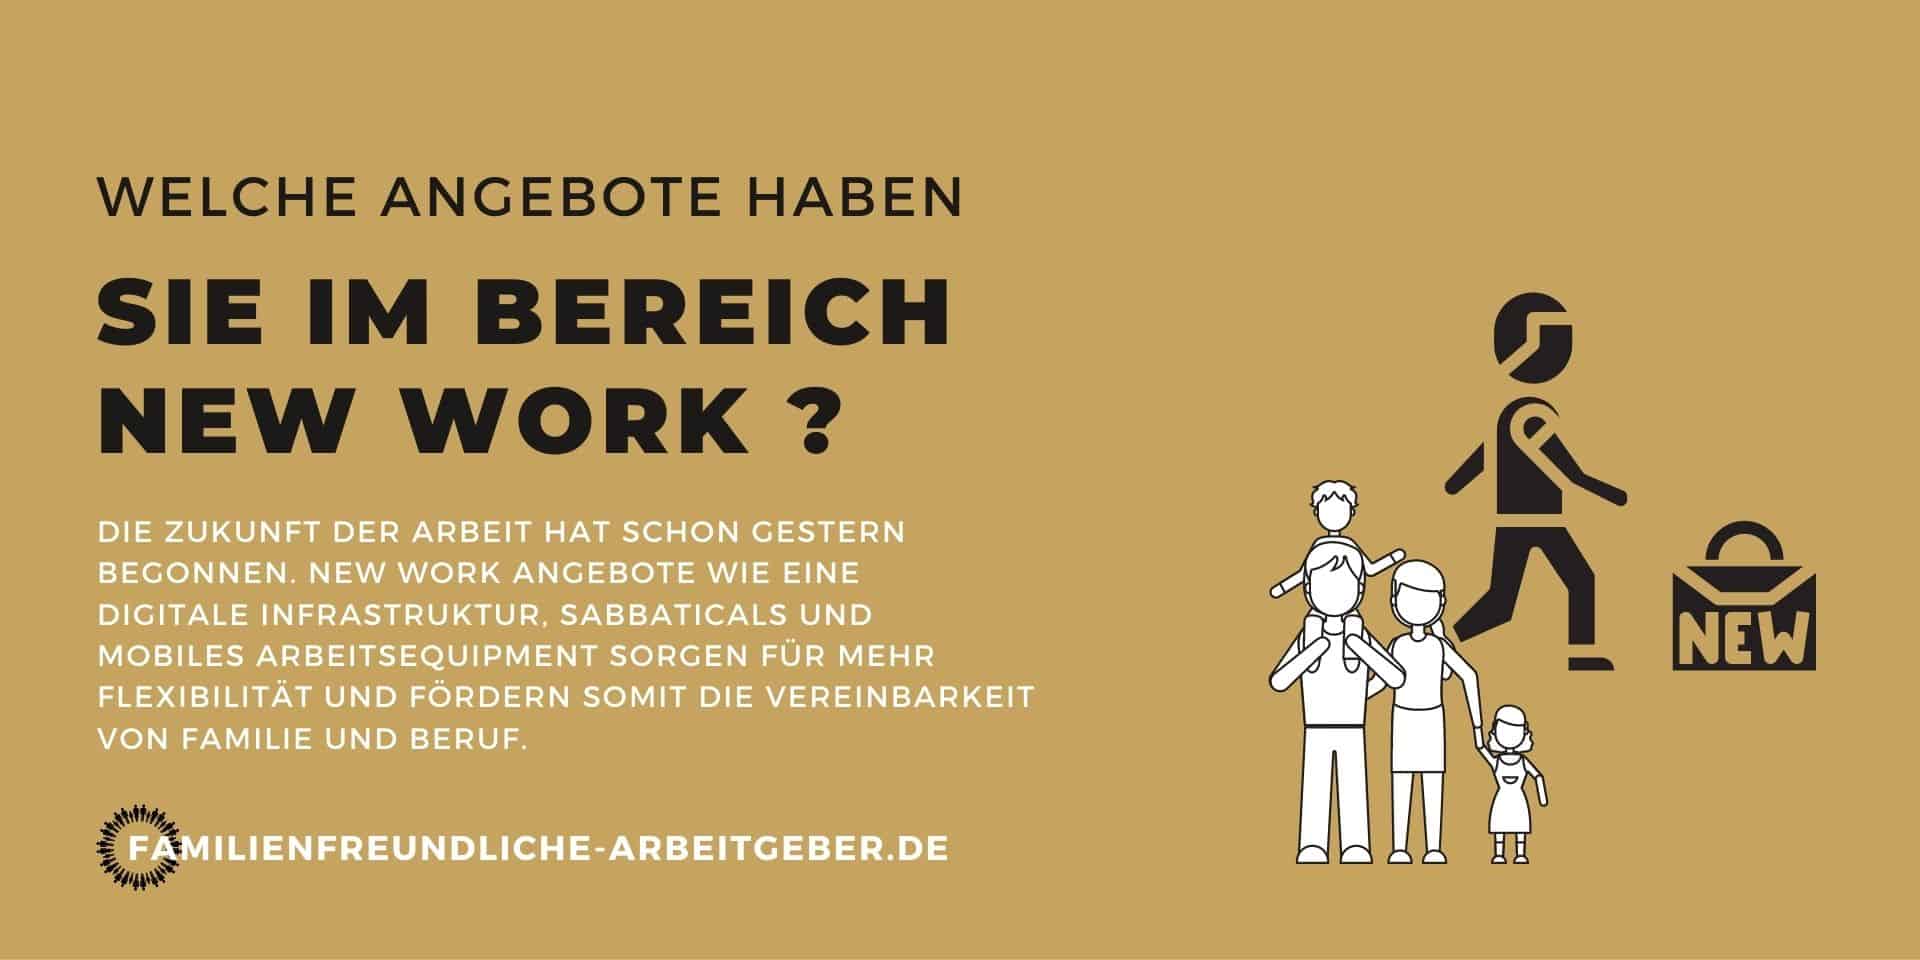 Familienfreundliche Arbeitgeber Unternehmen mit Jobs für Mütter und Väter New Work Digitaler Arbeitsplatz Remote Work